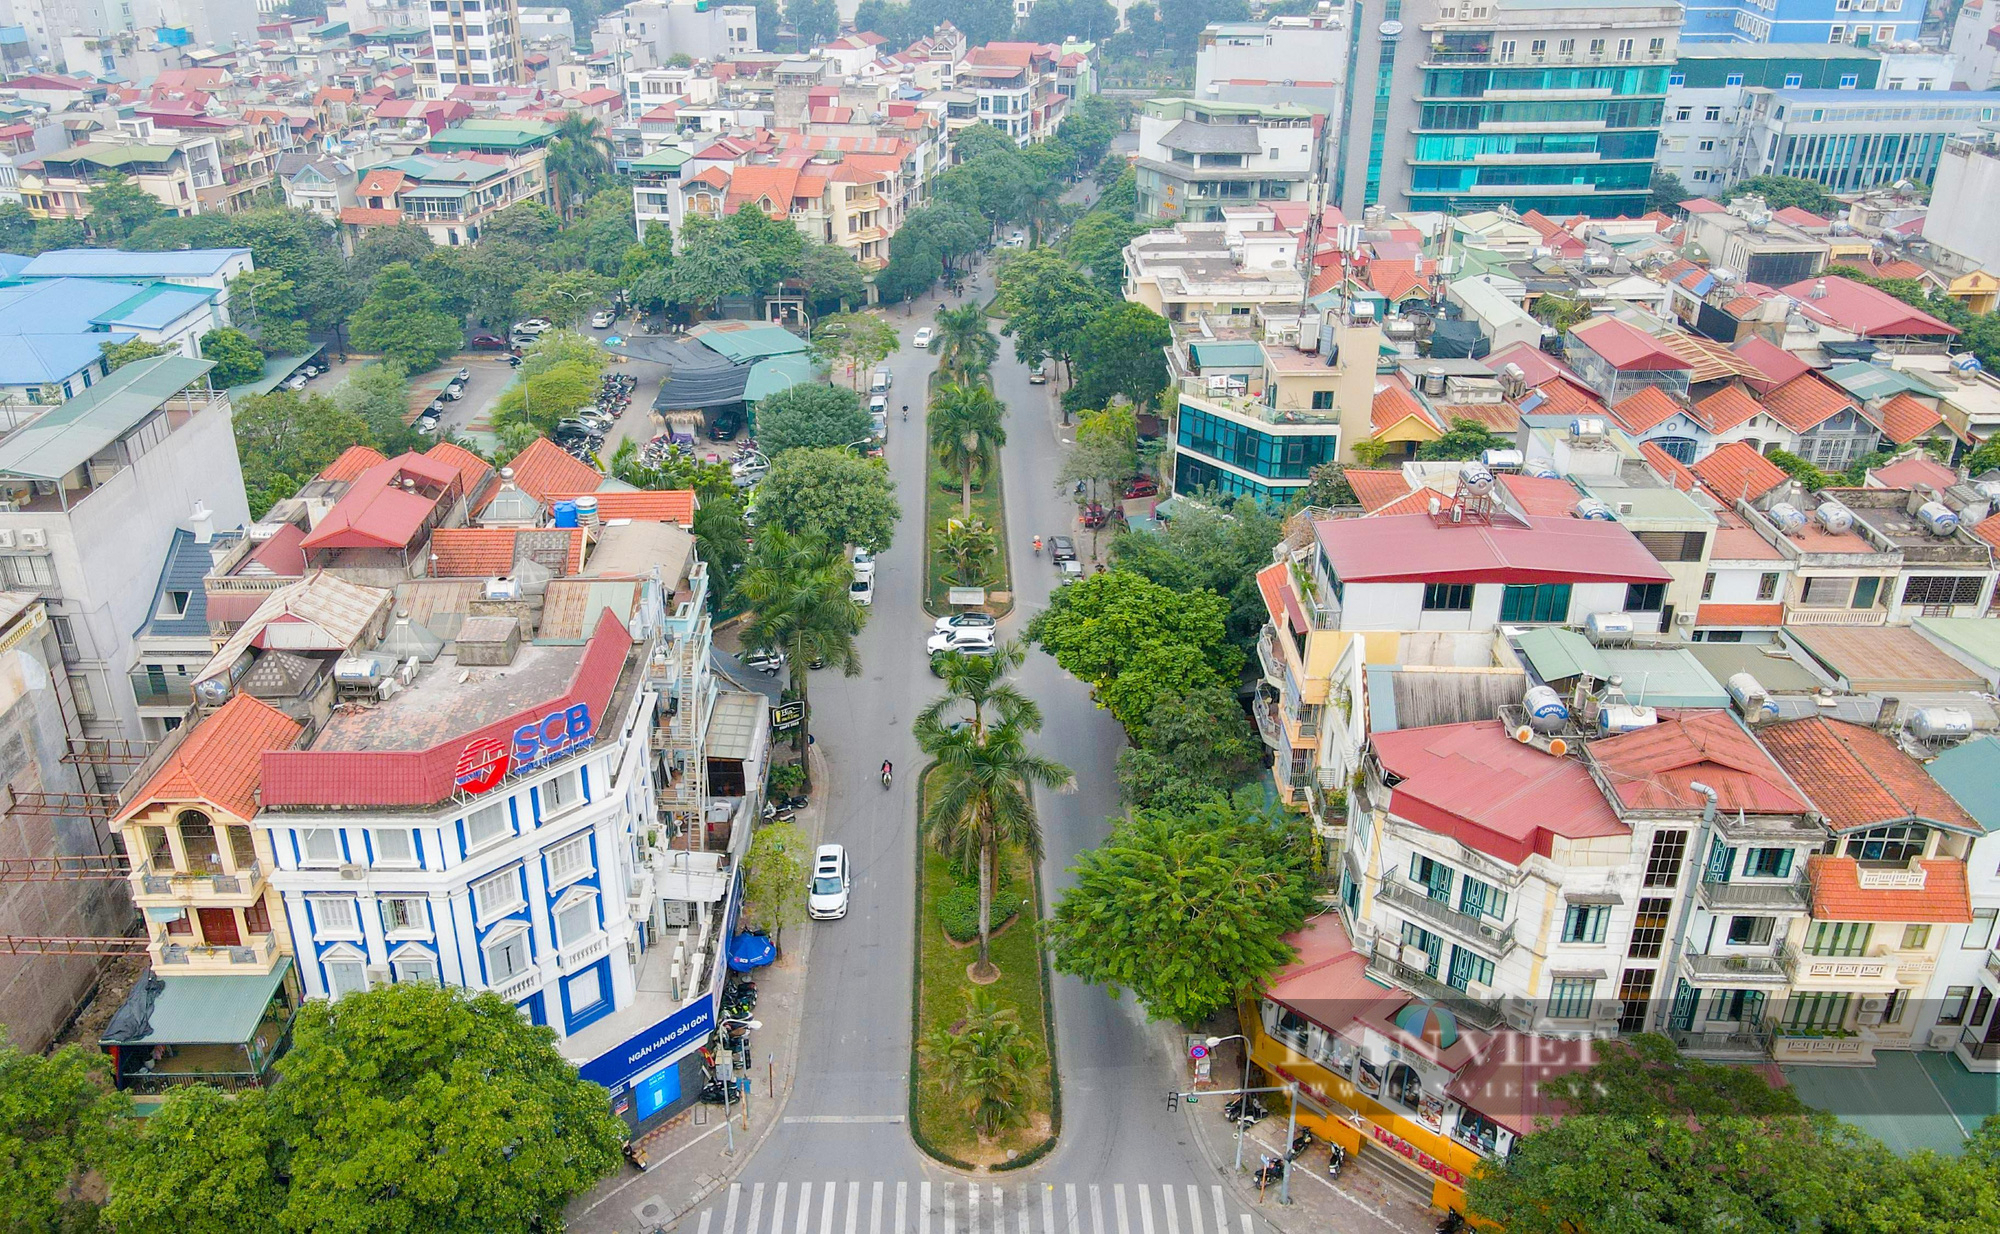 Clip: Cùng ngắm 2 tuyến đường mang tên Lưu Quang Vũ và Xuân Quỳnh - Ảnh 2.